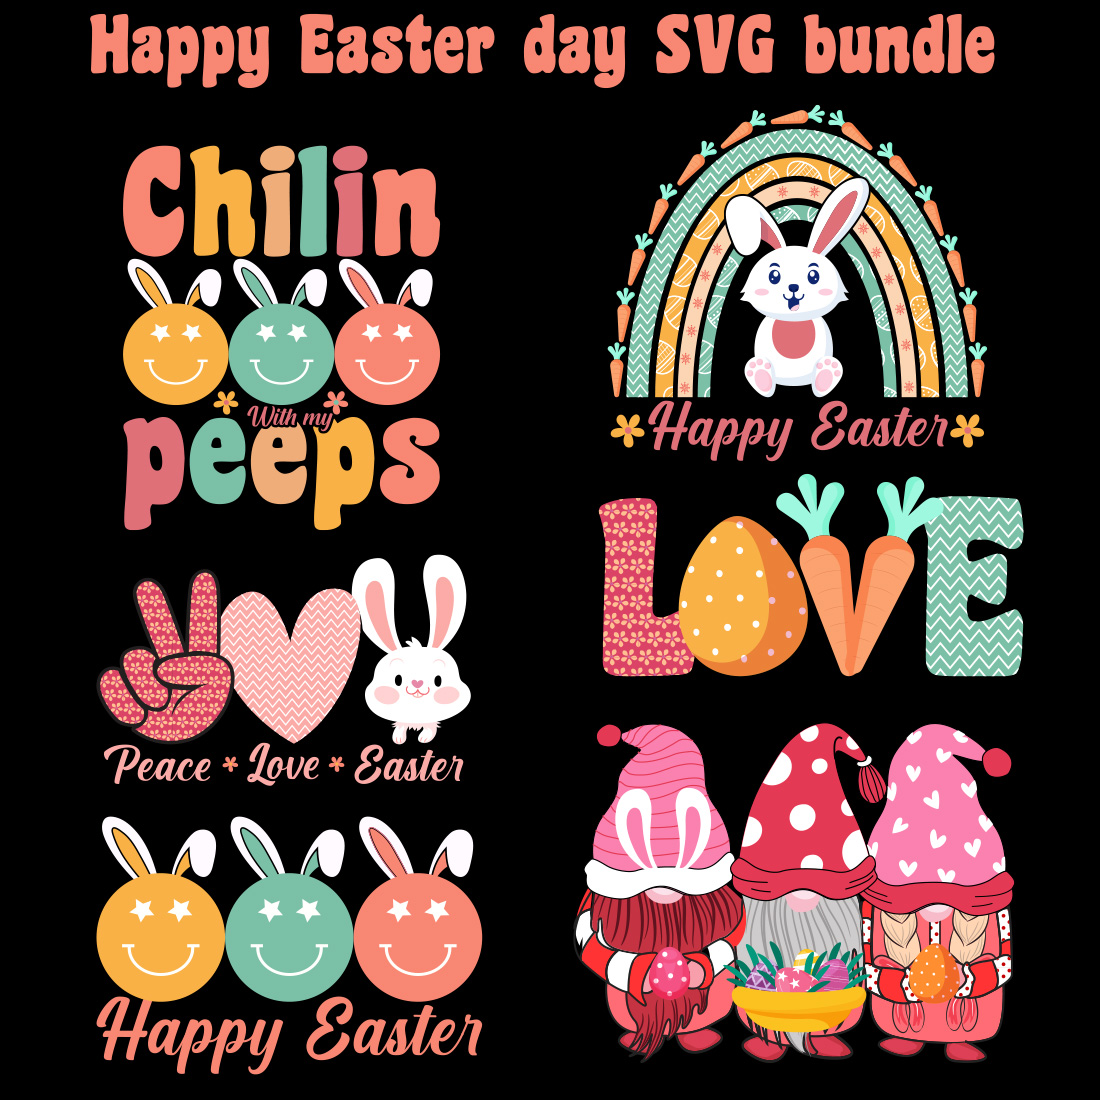 Happy Easter SVG Bundle design cover image.